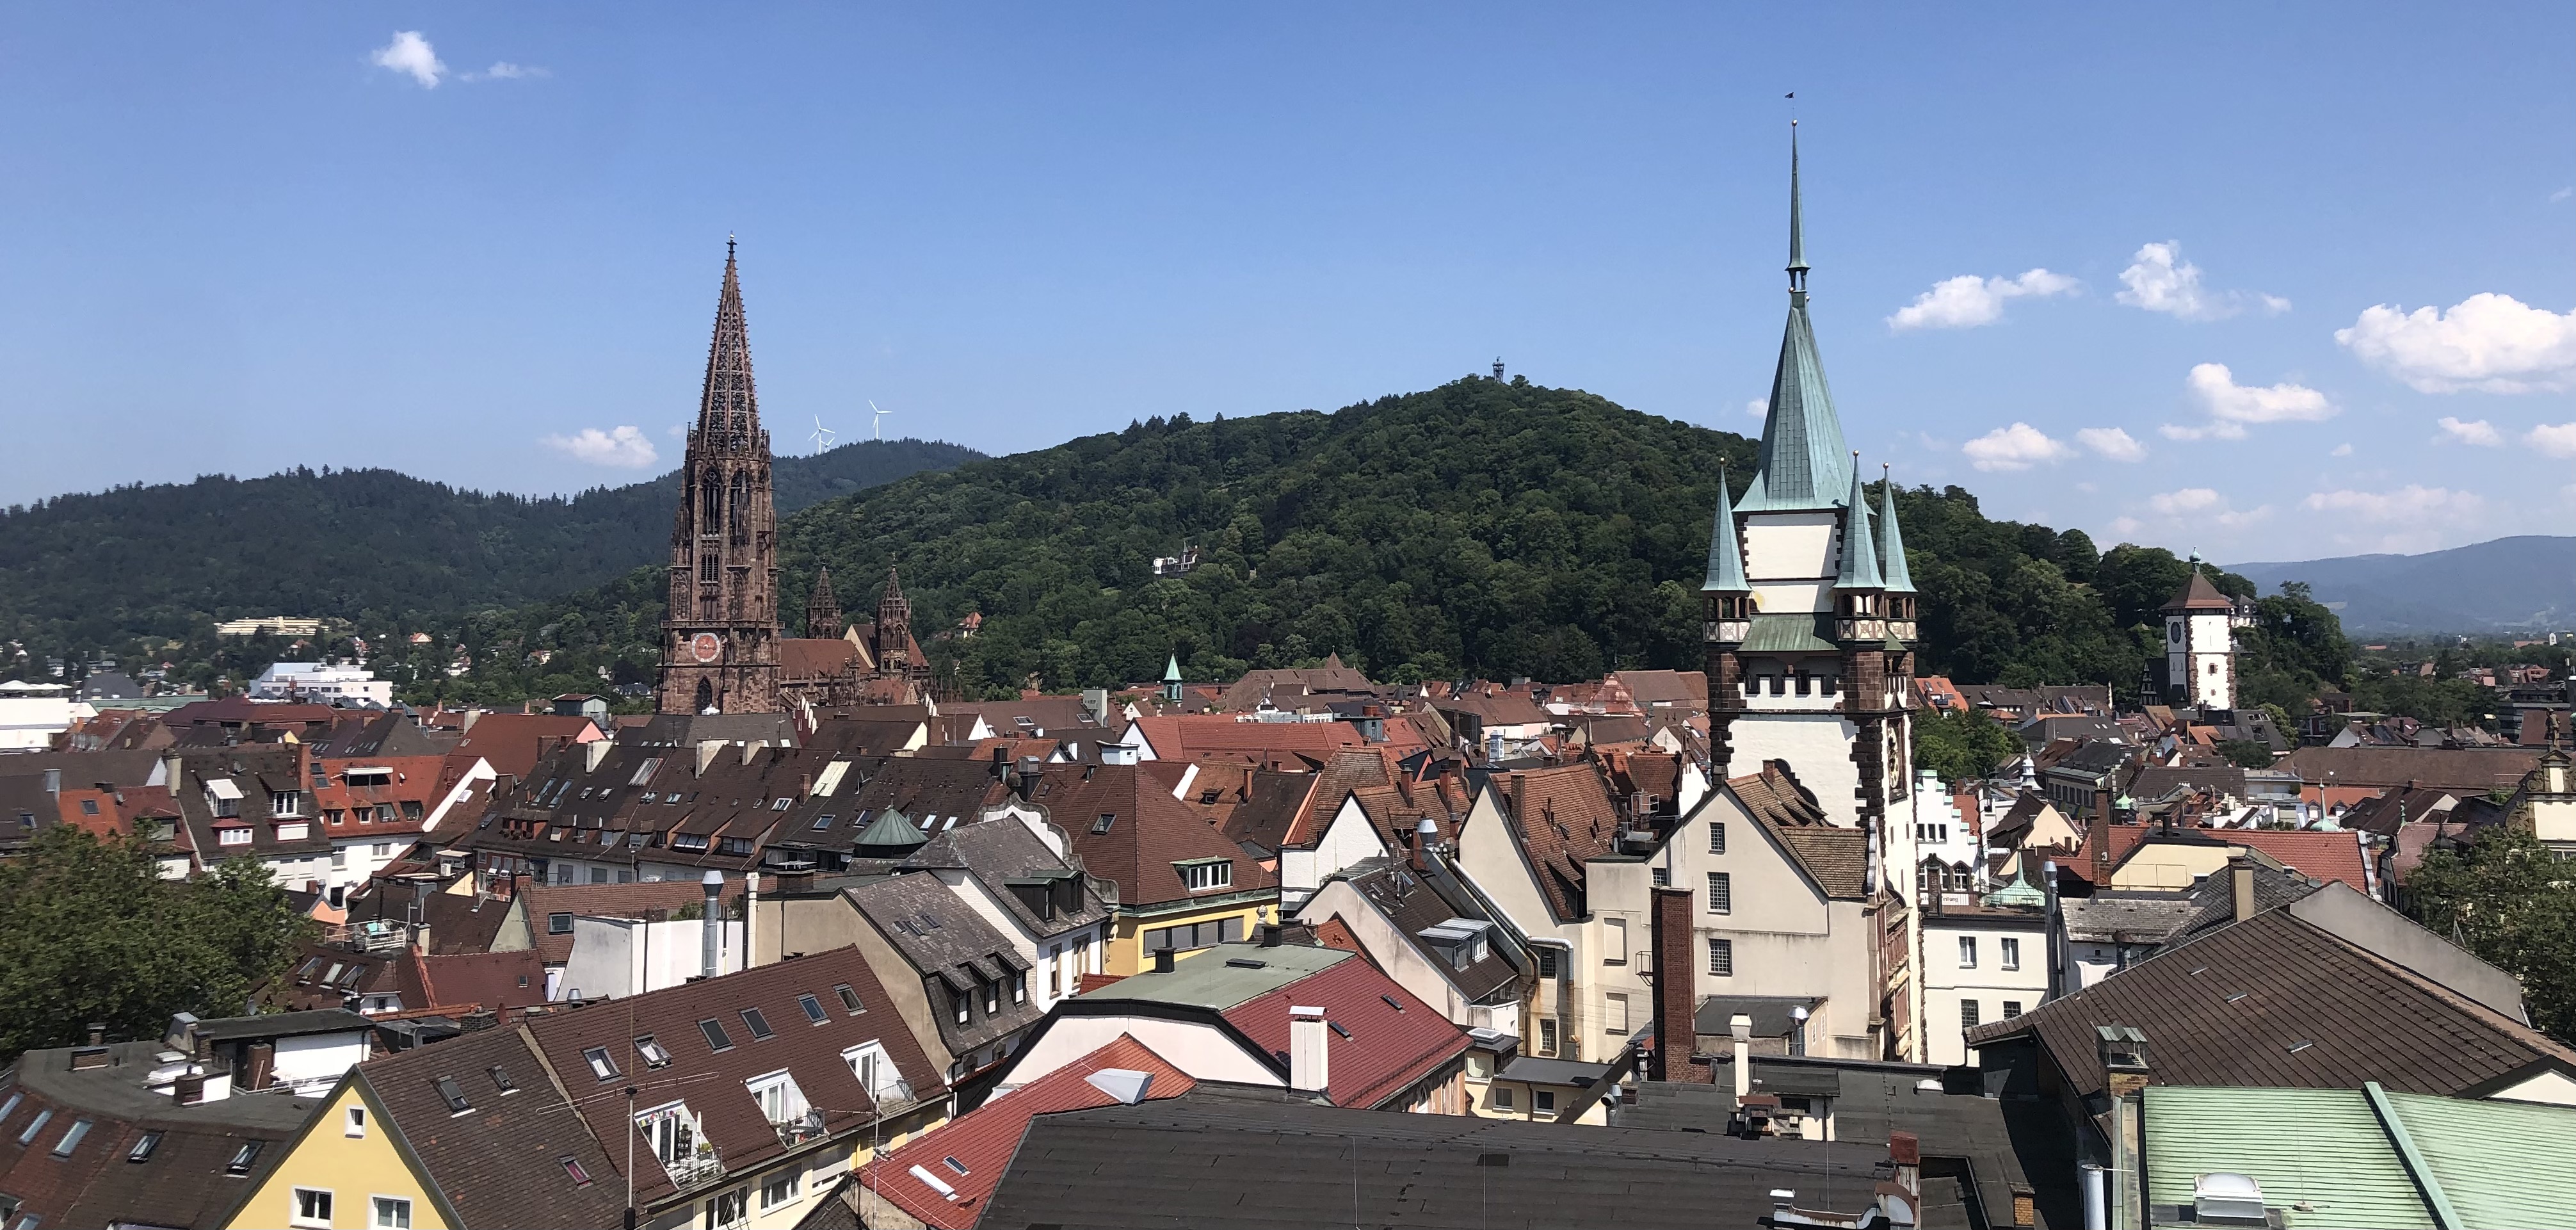 Blick auf Freiburg vom Karzer der Universität Freiburg. Foto: Clarissa Stransky